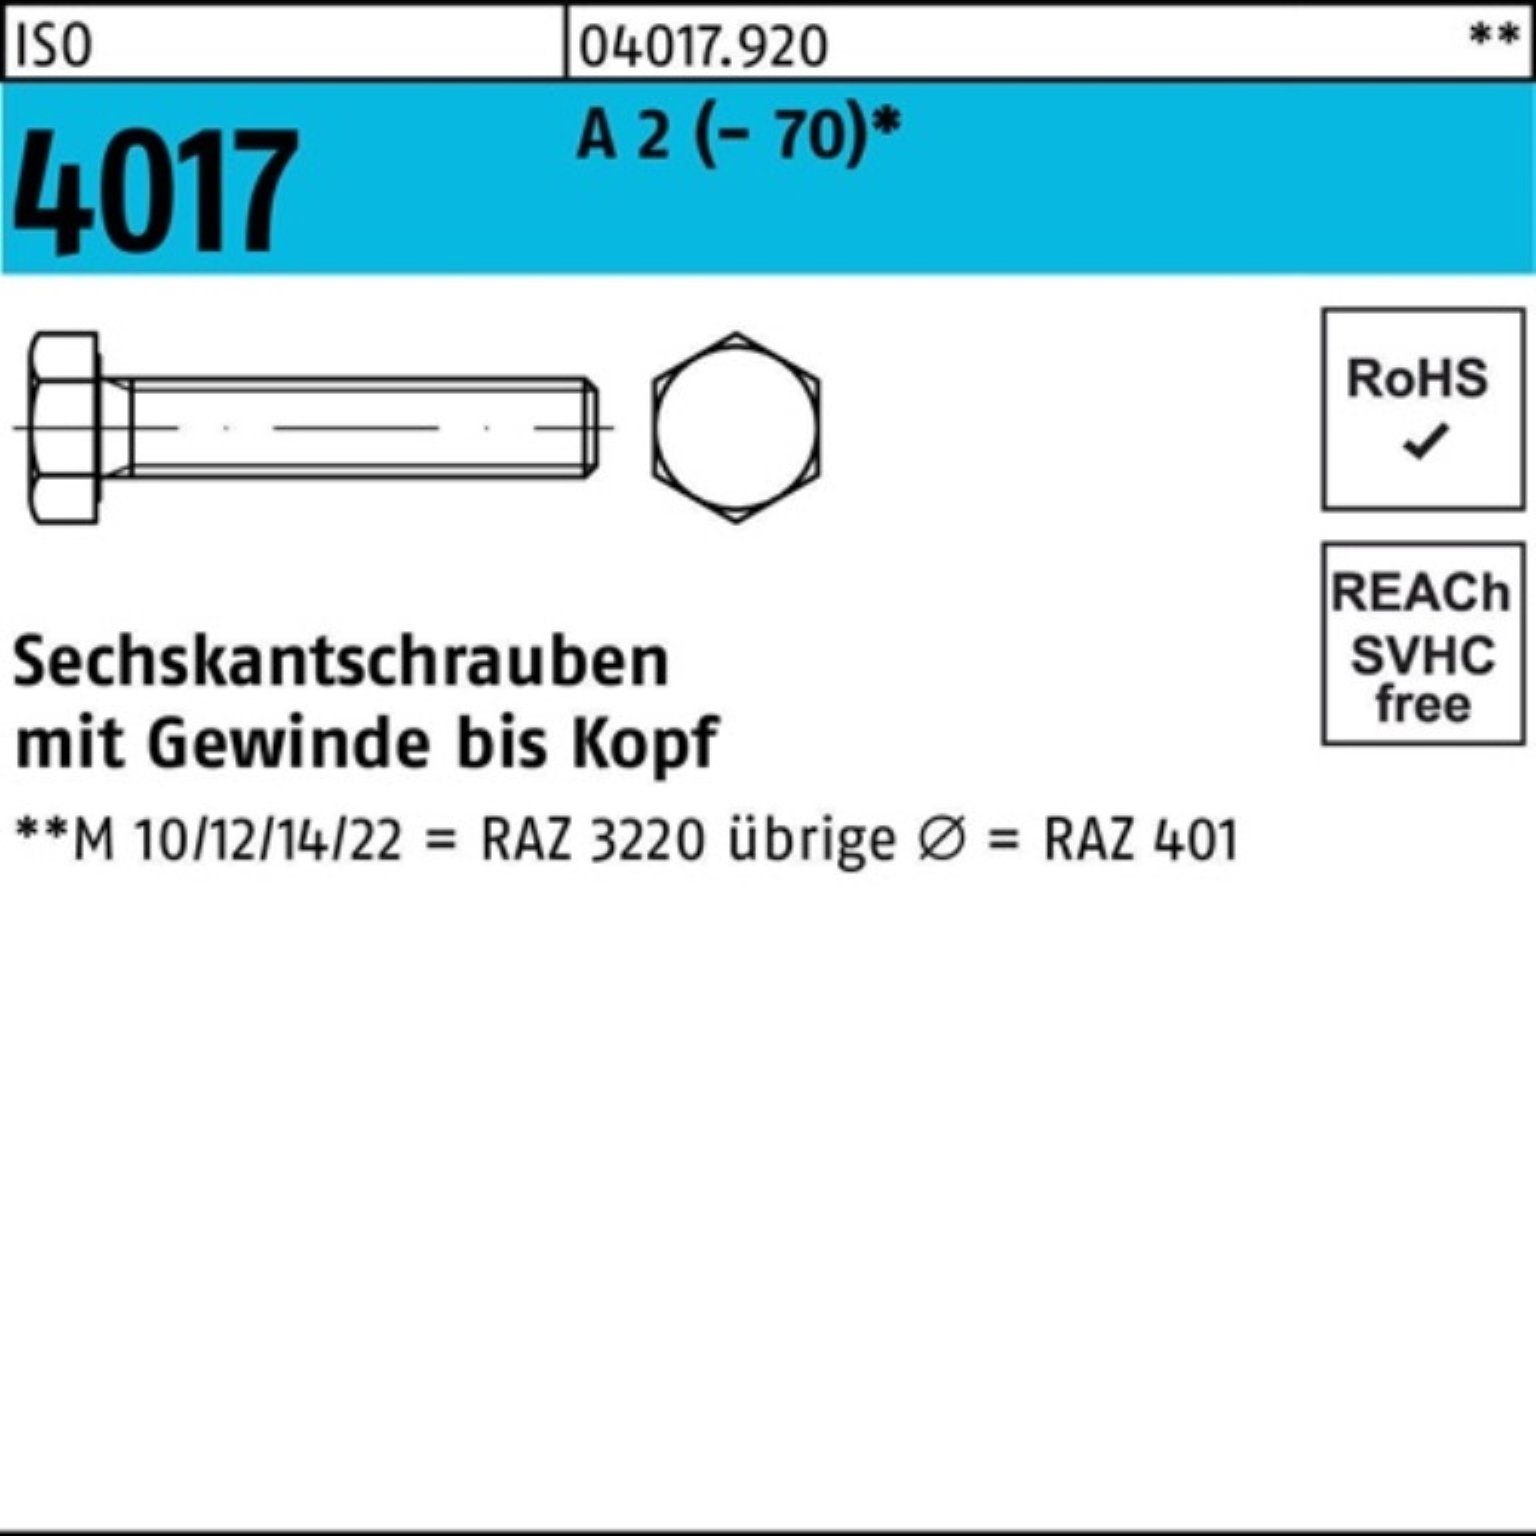 Bufab Sechskantschraube 100er Pack Sechskantschraube ISO 4017 VG M22x 90 A 2 (70) 1 Stück I | Schrauben